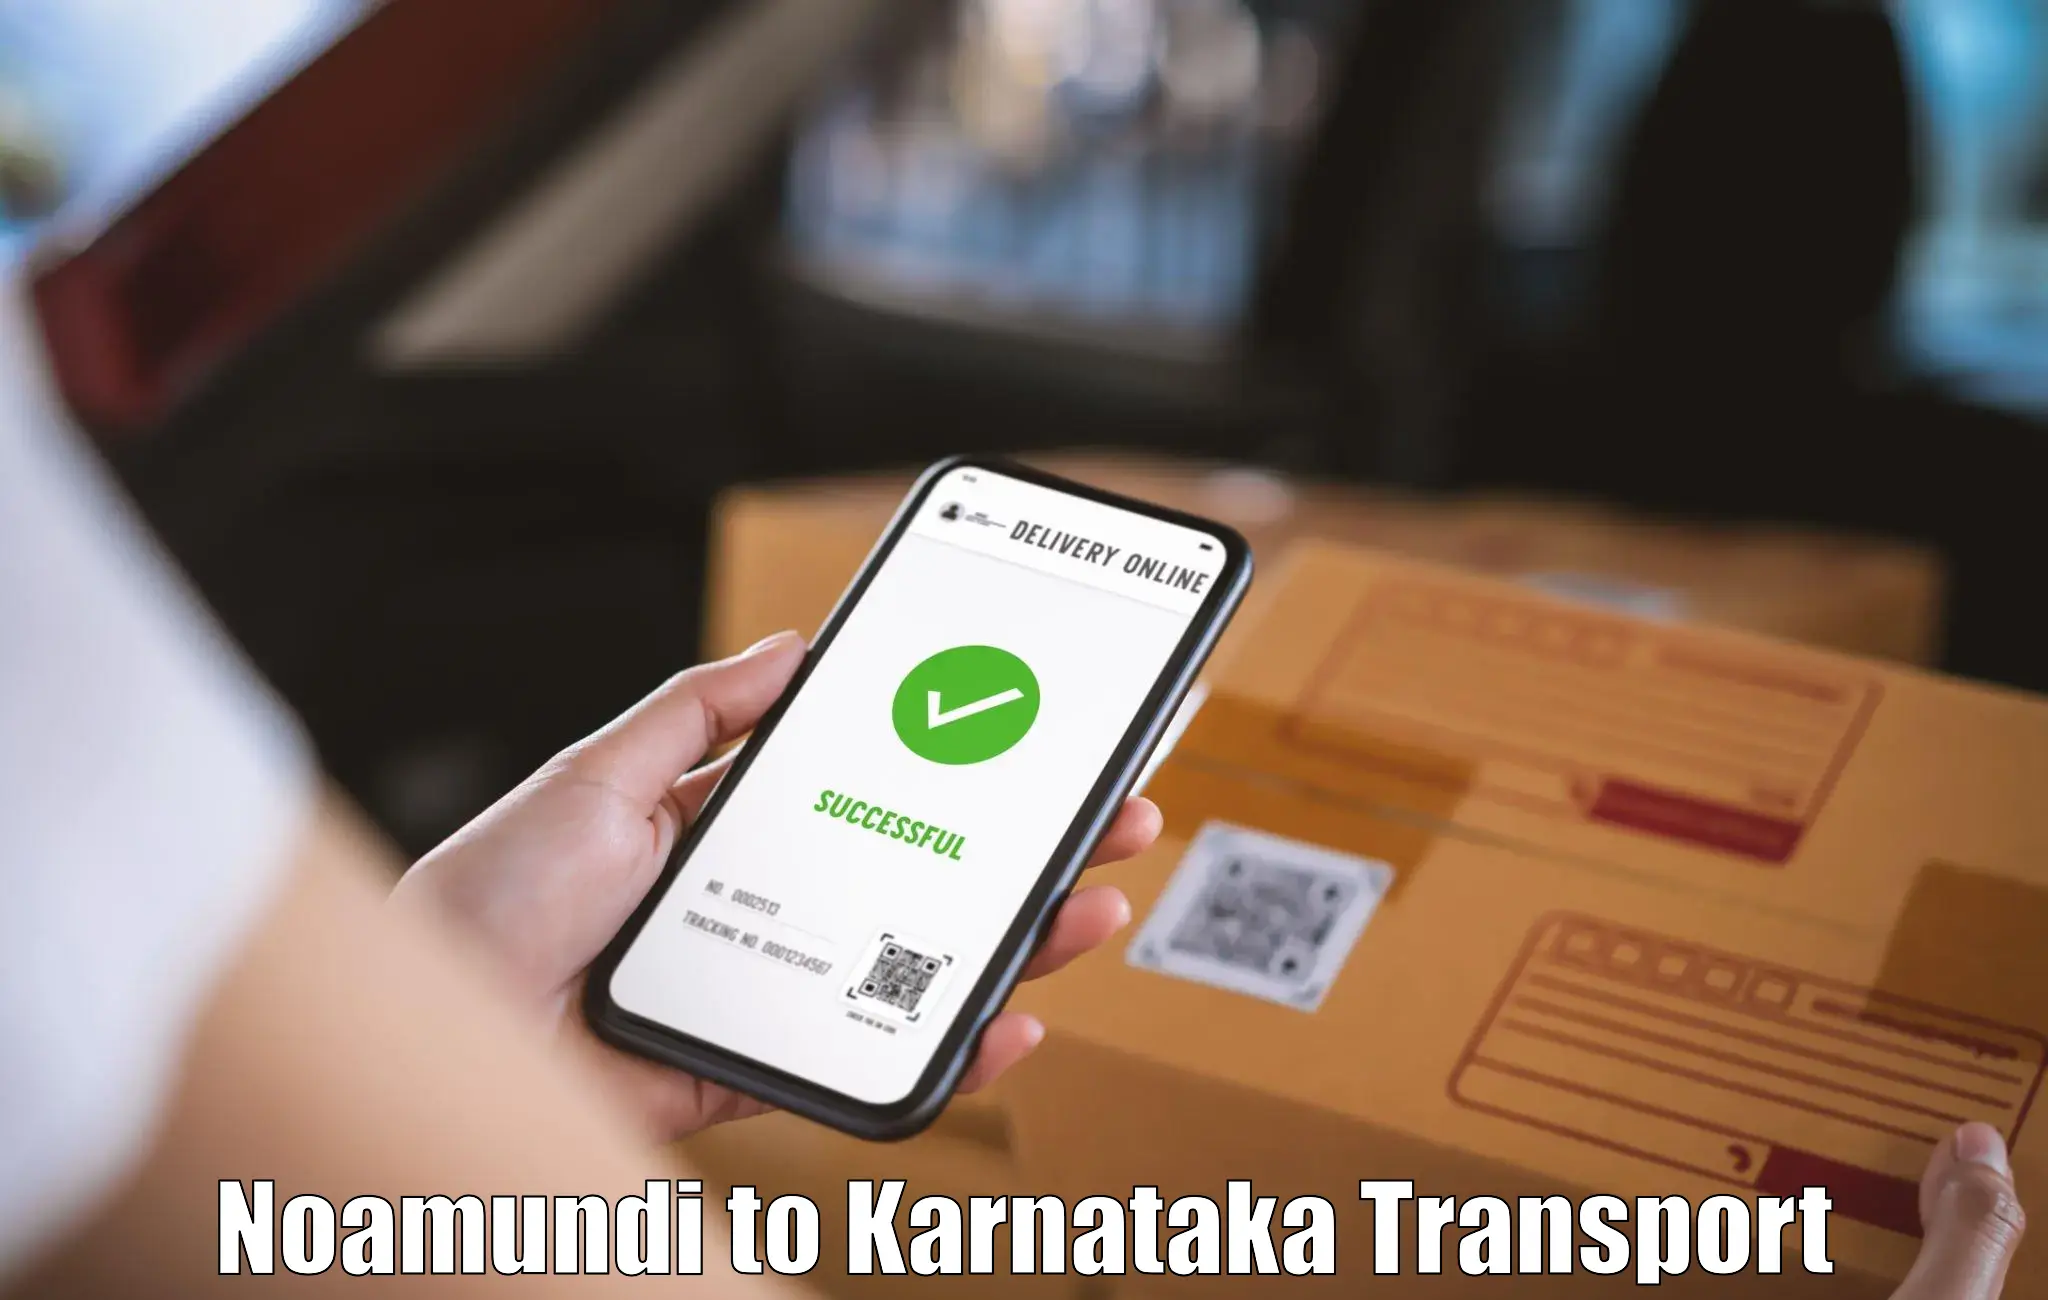 Luggage transport services Noamundi to Bangalore